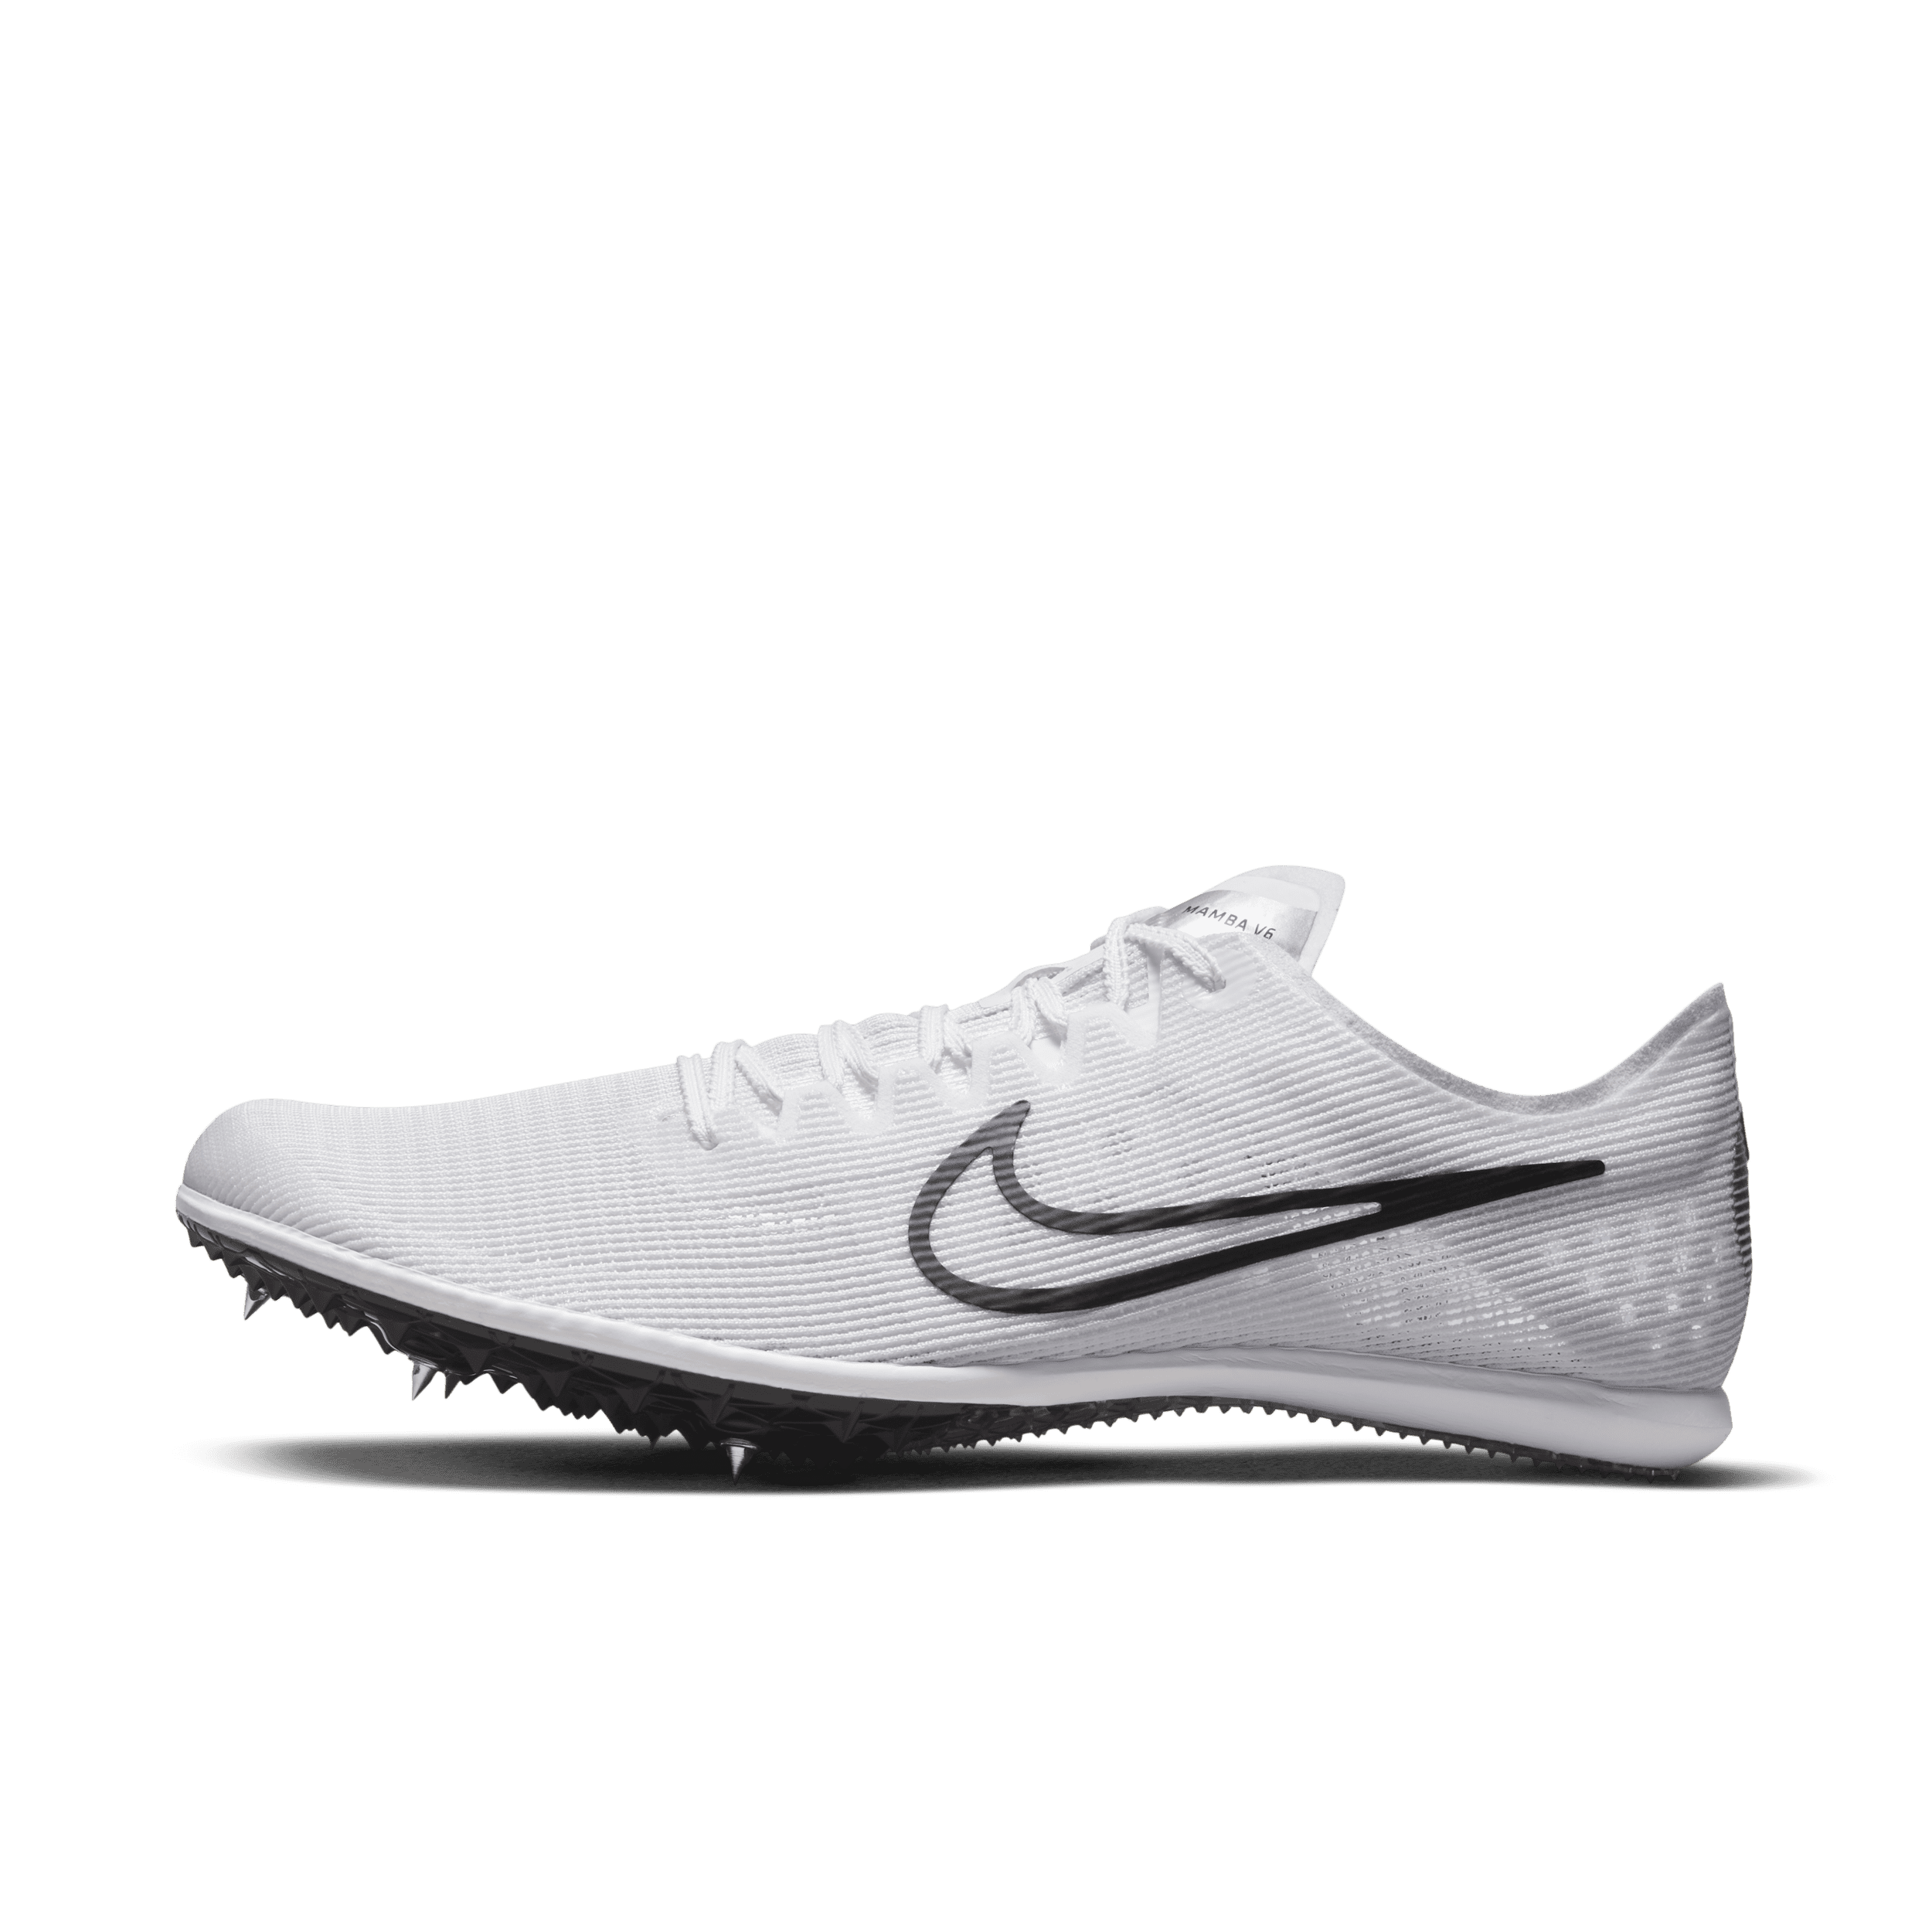 Nike Zoom Mamba 6-pigsko til stadionatletik og distancer - hvid